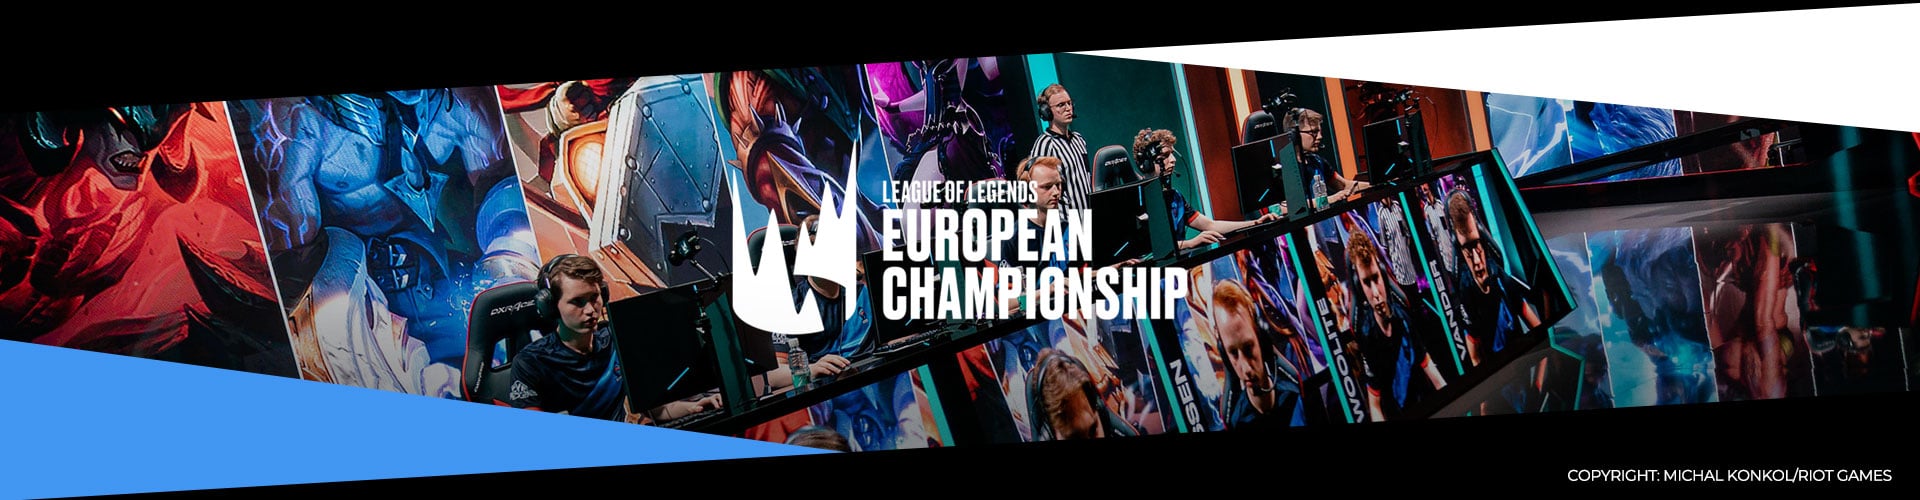 Eventsida för vårfinalerna av League of Legends European Championship.